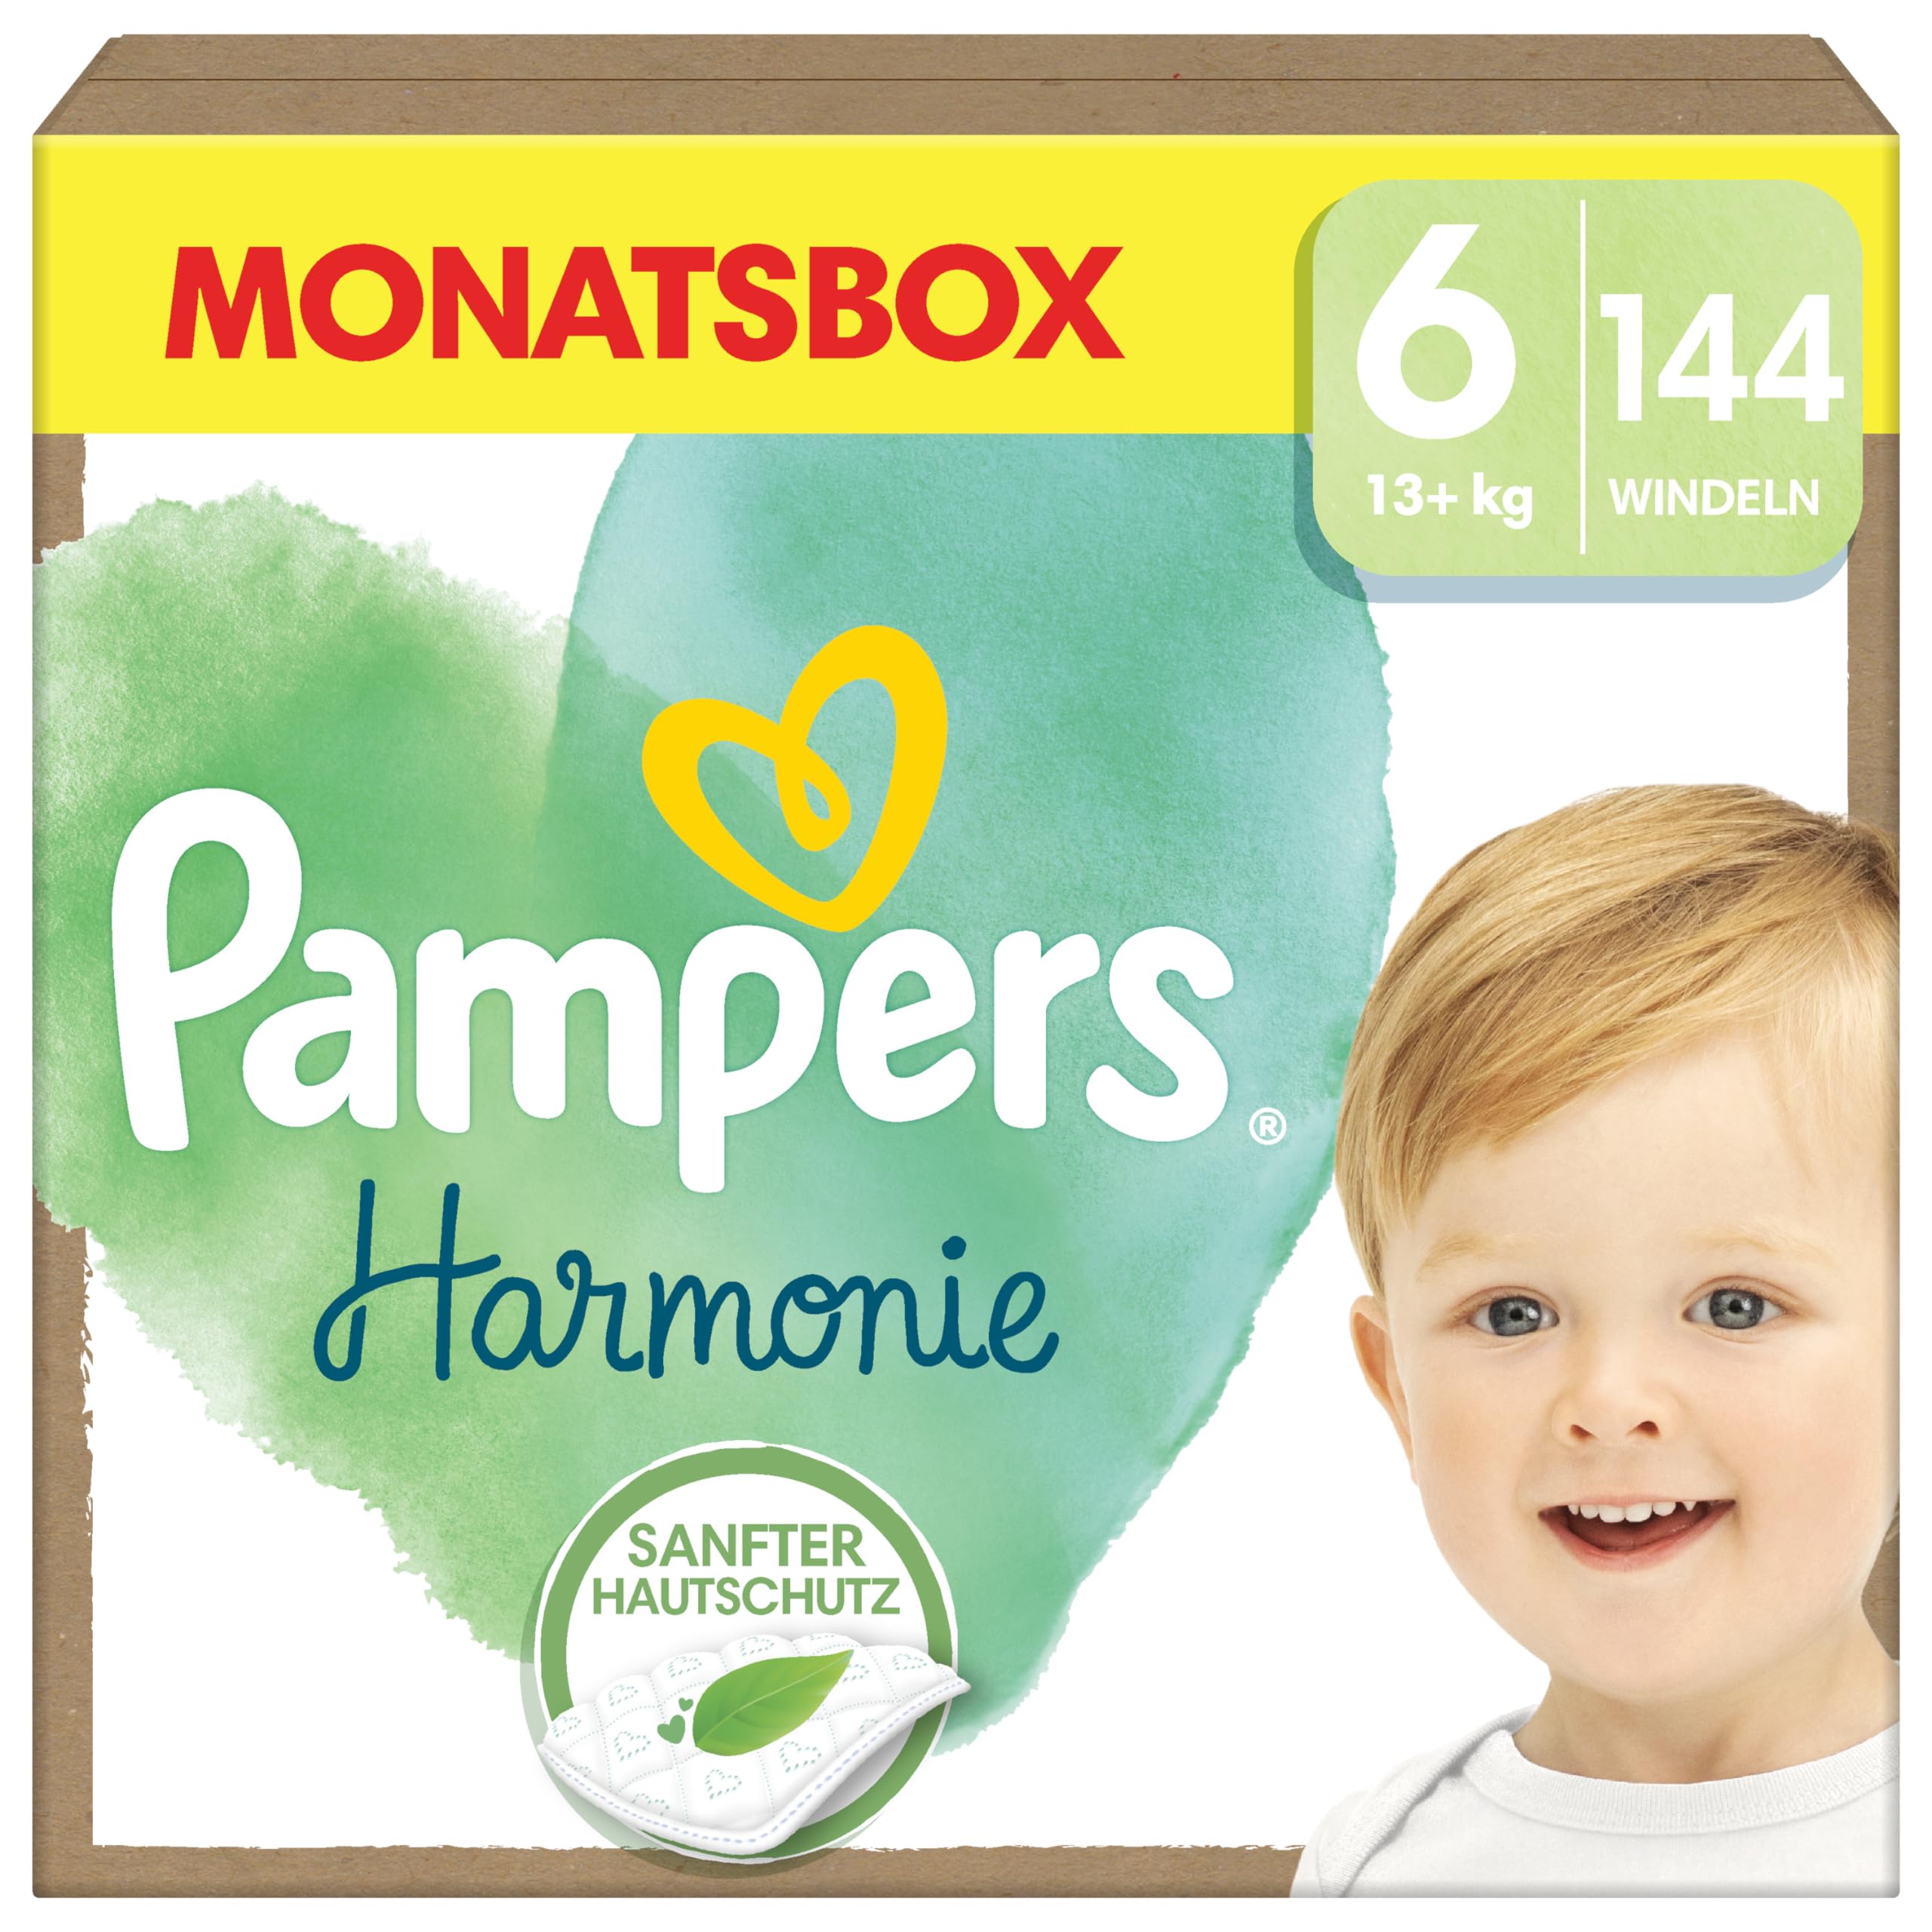 Pampers Baby Windeln Größe 6 (13kg+) Harmonie, MONATSBOX, Sanfter Hautschutz Und Pflanzenbasierte Inhaltsstoffe, 144 Stück